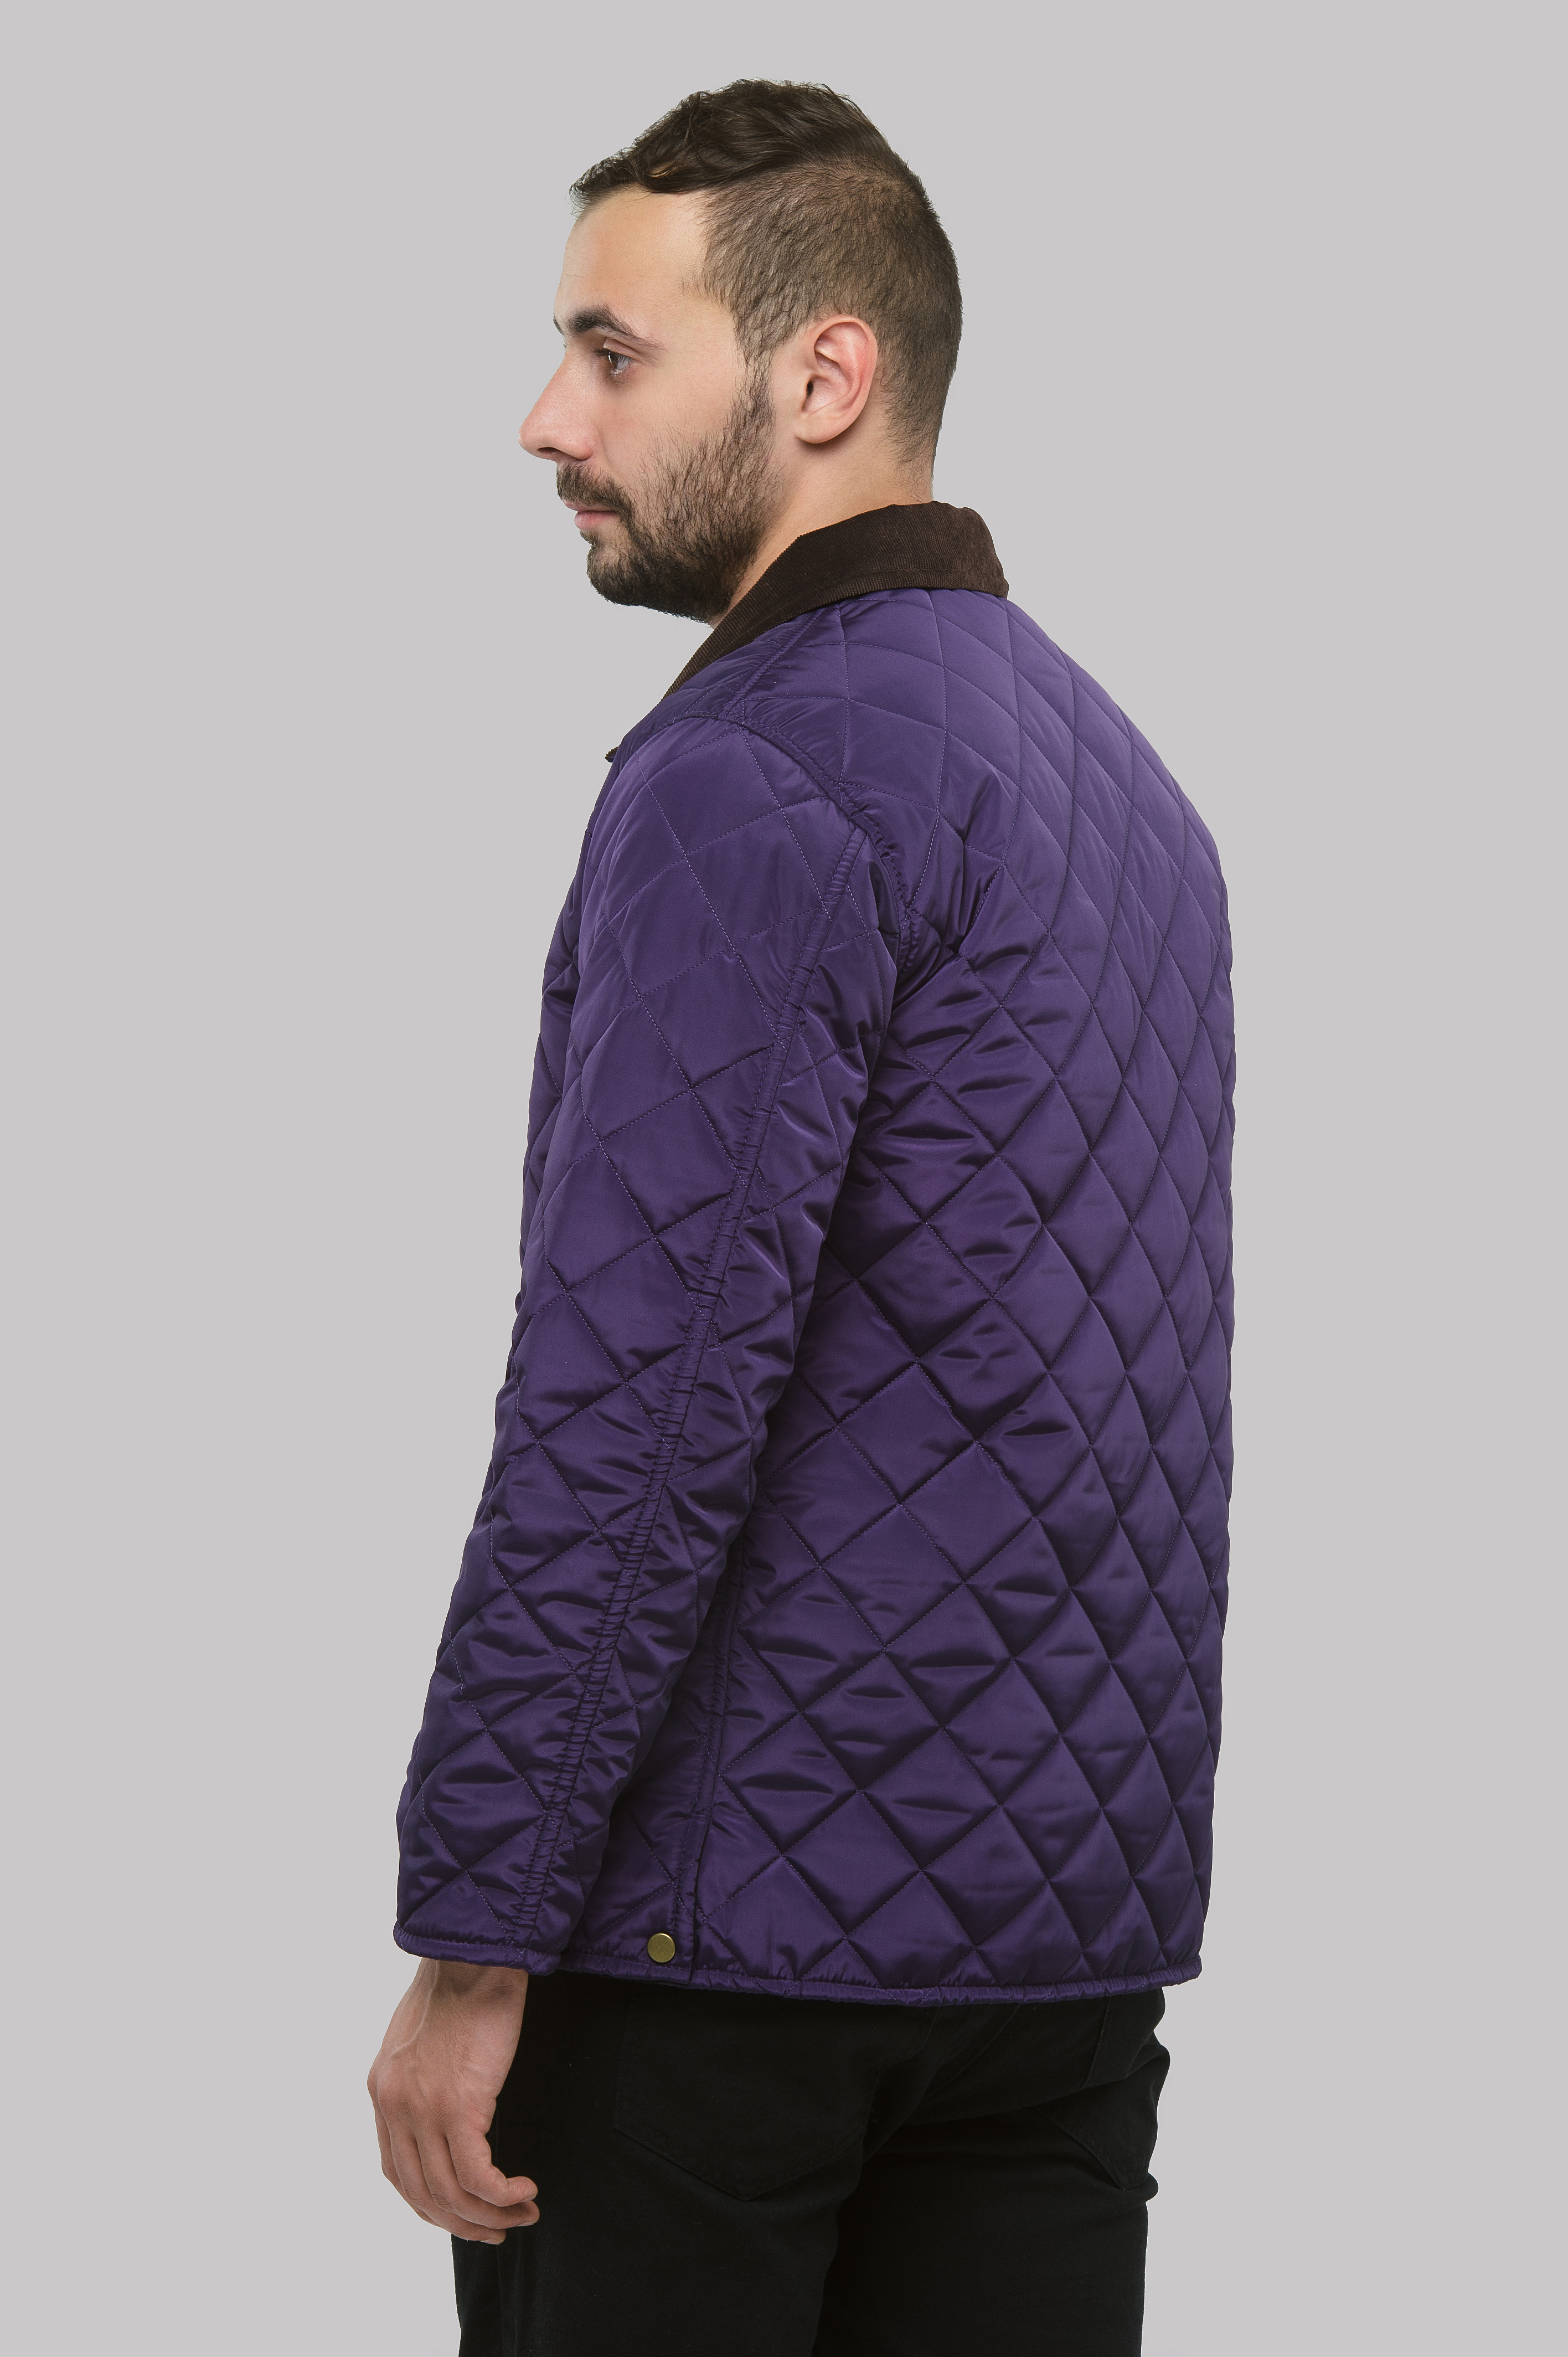 Куртка стеганая Сэр 2016 Фиолетовая